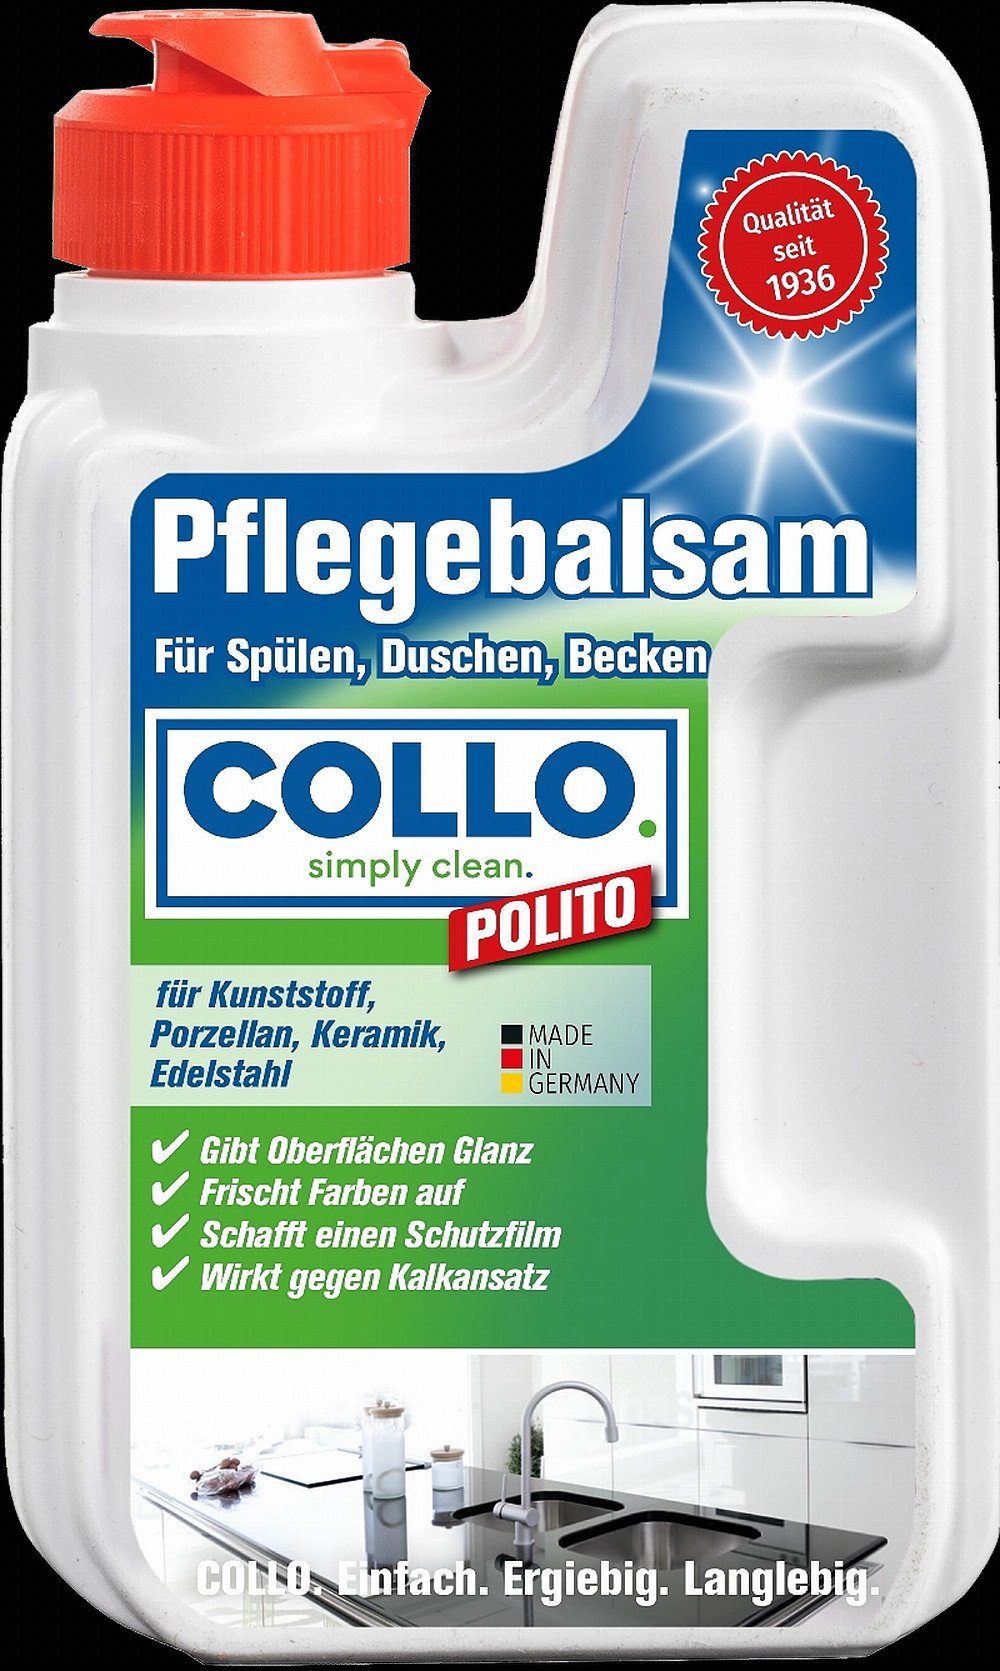 COLLO Collo Polito Küchenreiniger Spülbeckenpflege ml für 125 Spülen, Dusche, Becken